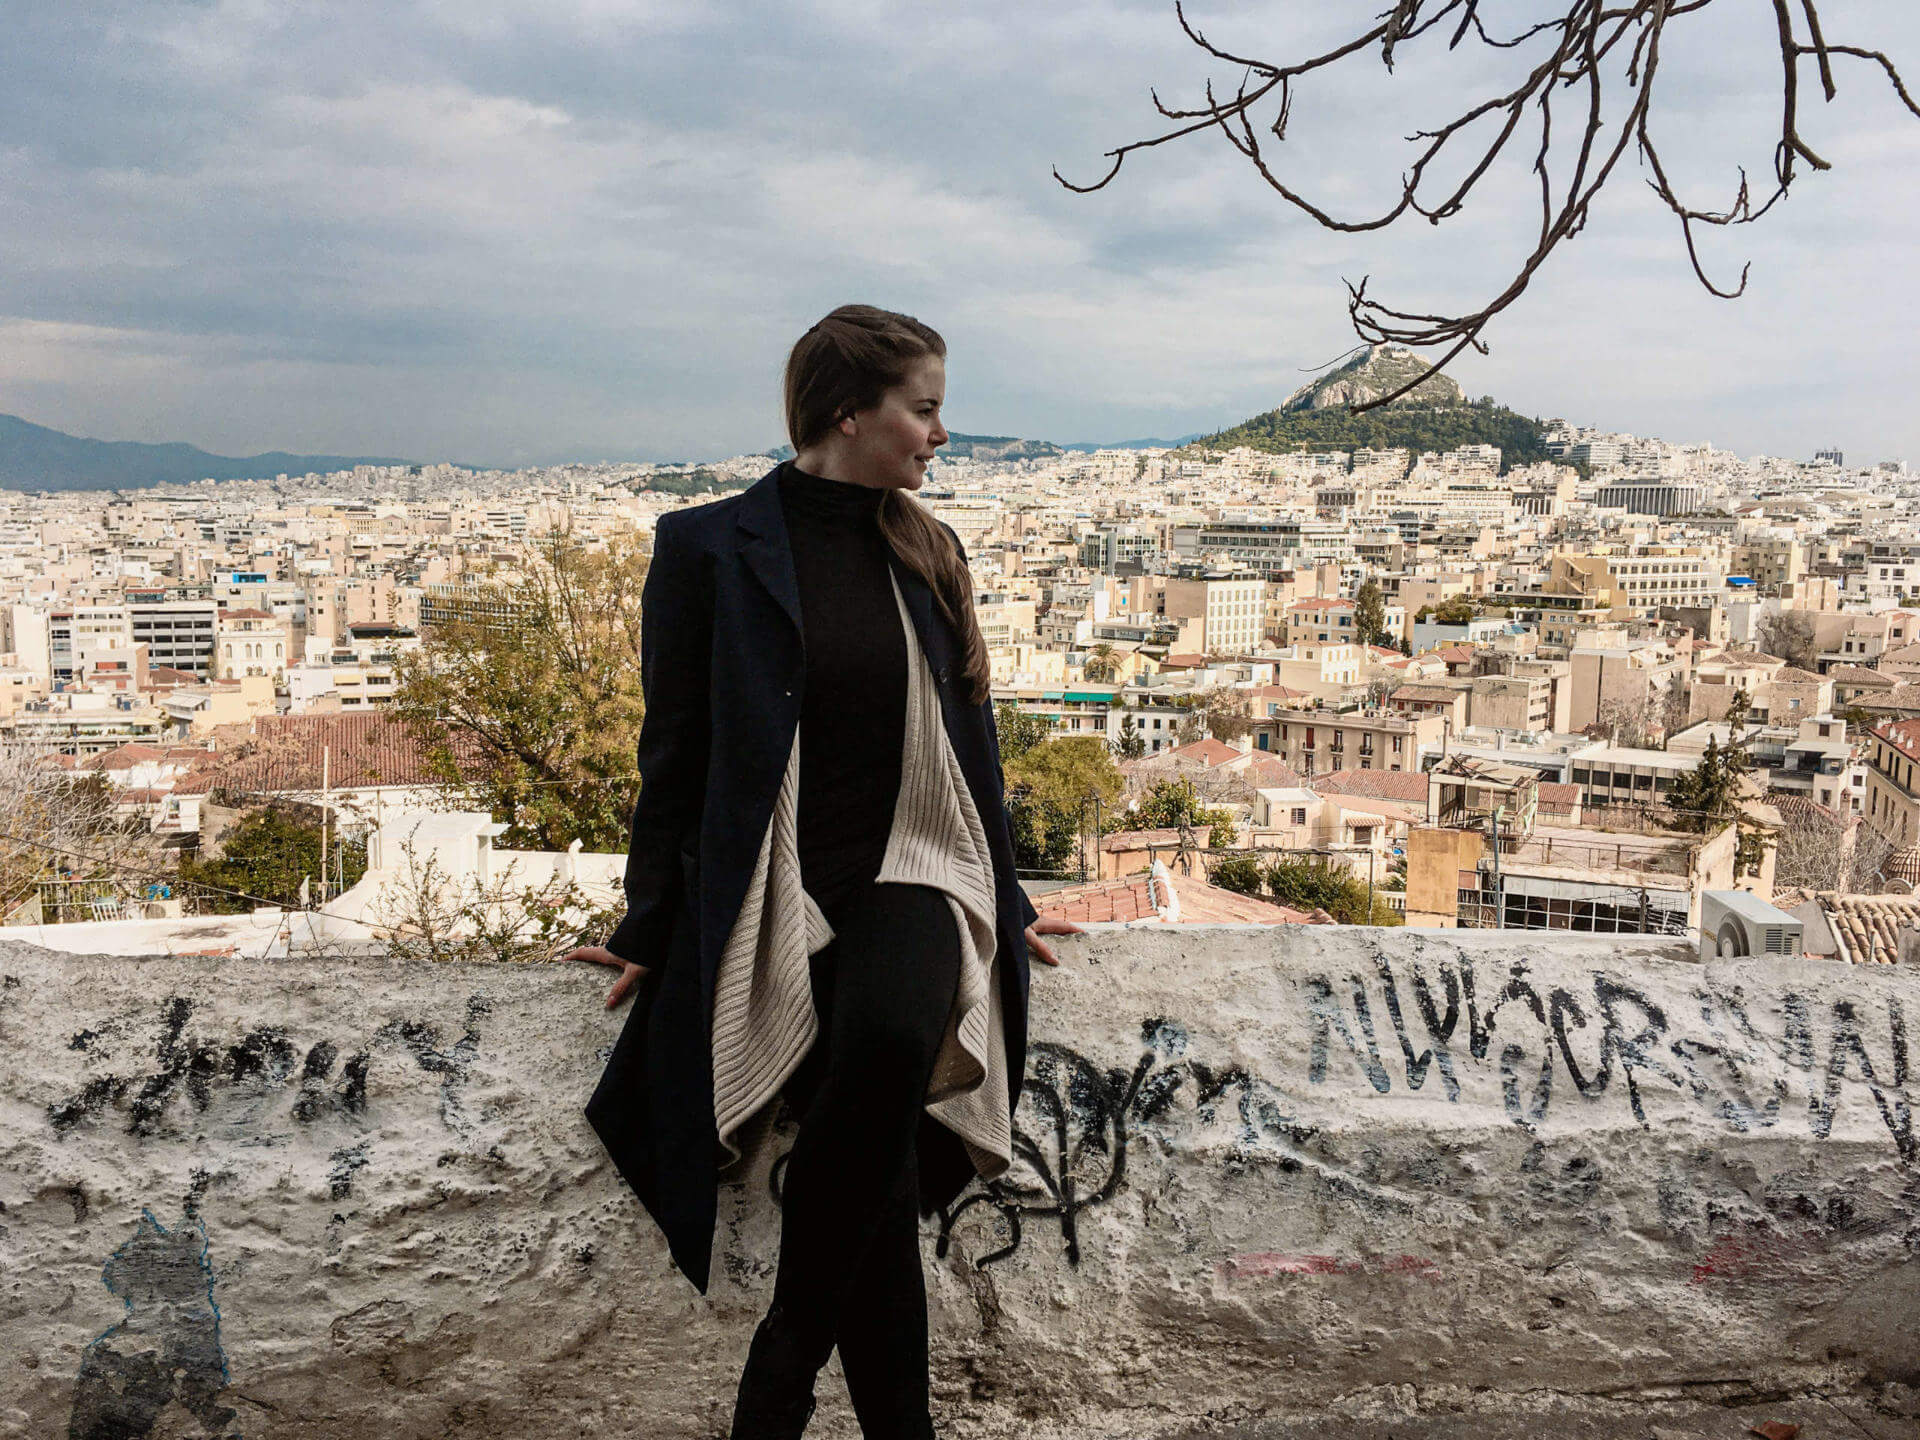 Blick auf die sich weit erstreckende Hauptstadt Athen und die Akropolis von Anafiotika aus, Reisebloggerin Franziska posiert vor der Dächerflut auf einer Mauer sitzend.